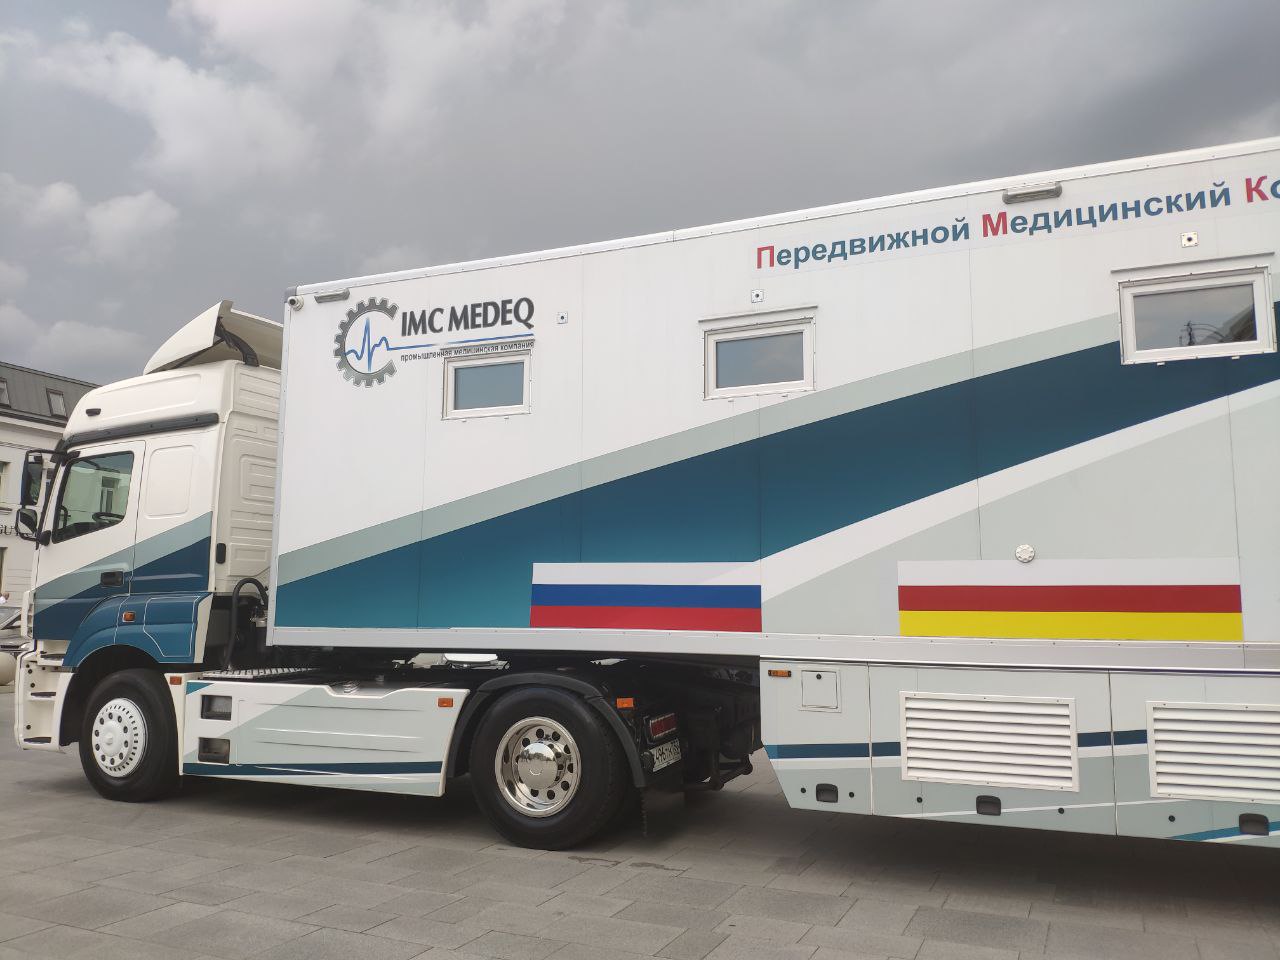 Передвижной медицинский комплекс с врачами-специалистами и аппаратурой прибыл в Северную Осетию